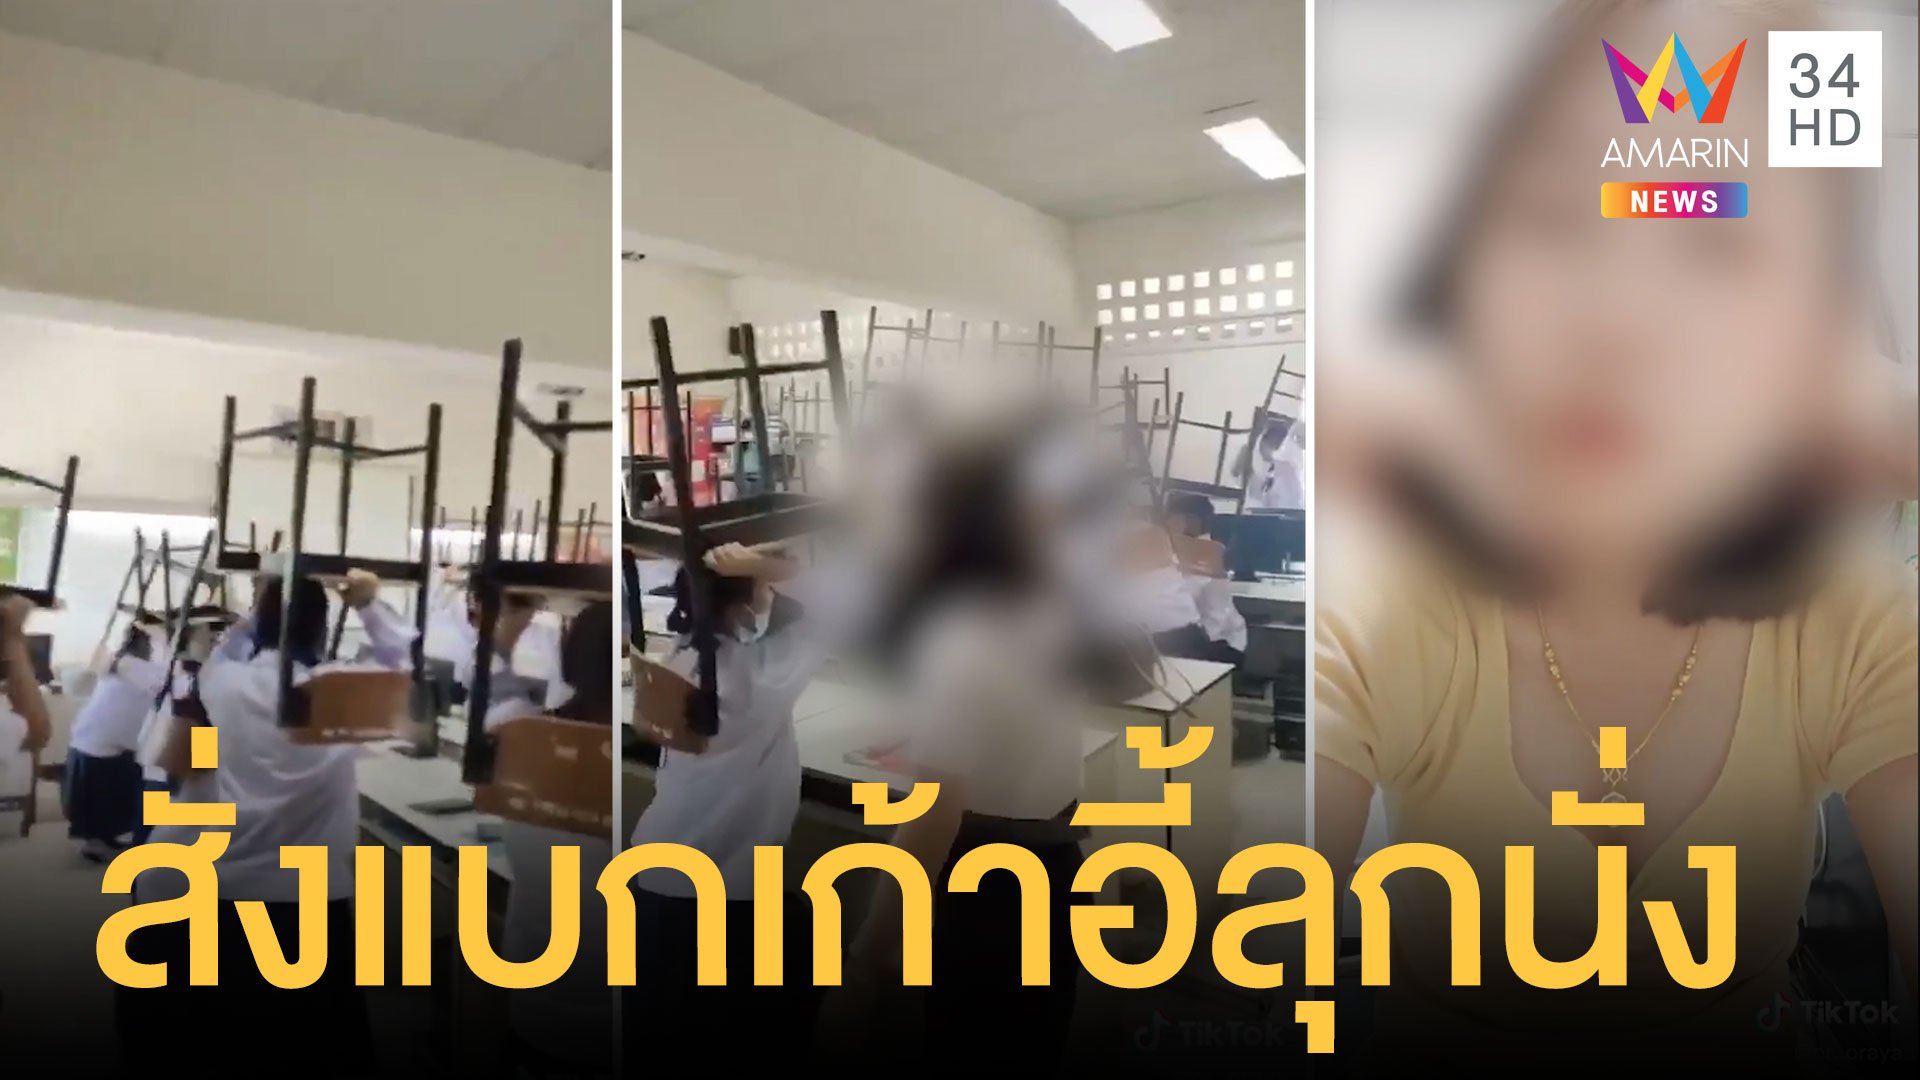   ทำโทษนักเรียนพิสดาร ครูฝึกสอนให้แบกเก้าอี้ลุกนั่ง | ข่าวอรุณอมรินทร์ | 25 ส.ค. 63 | AMARIN TVHD34